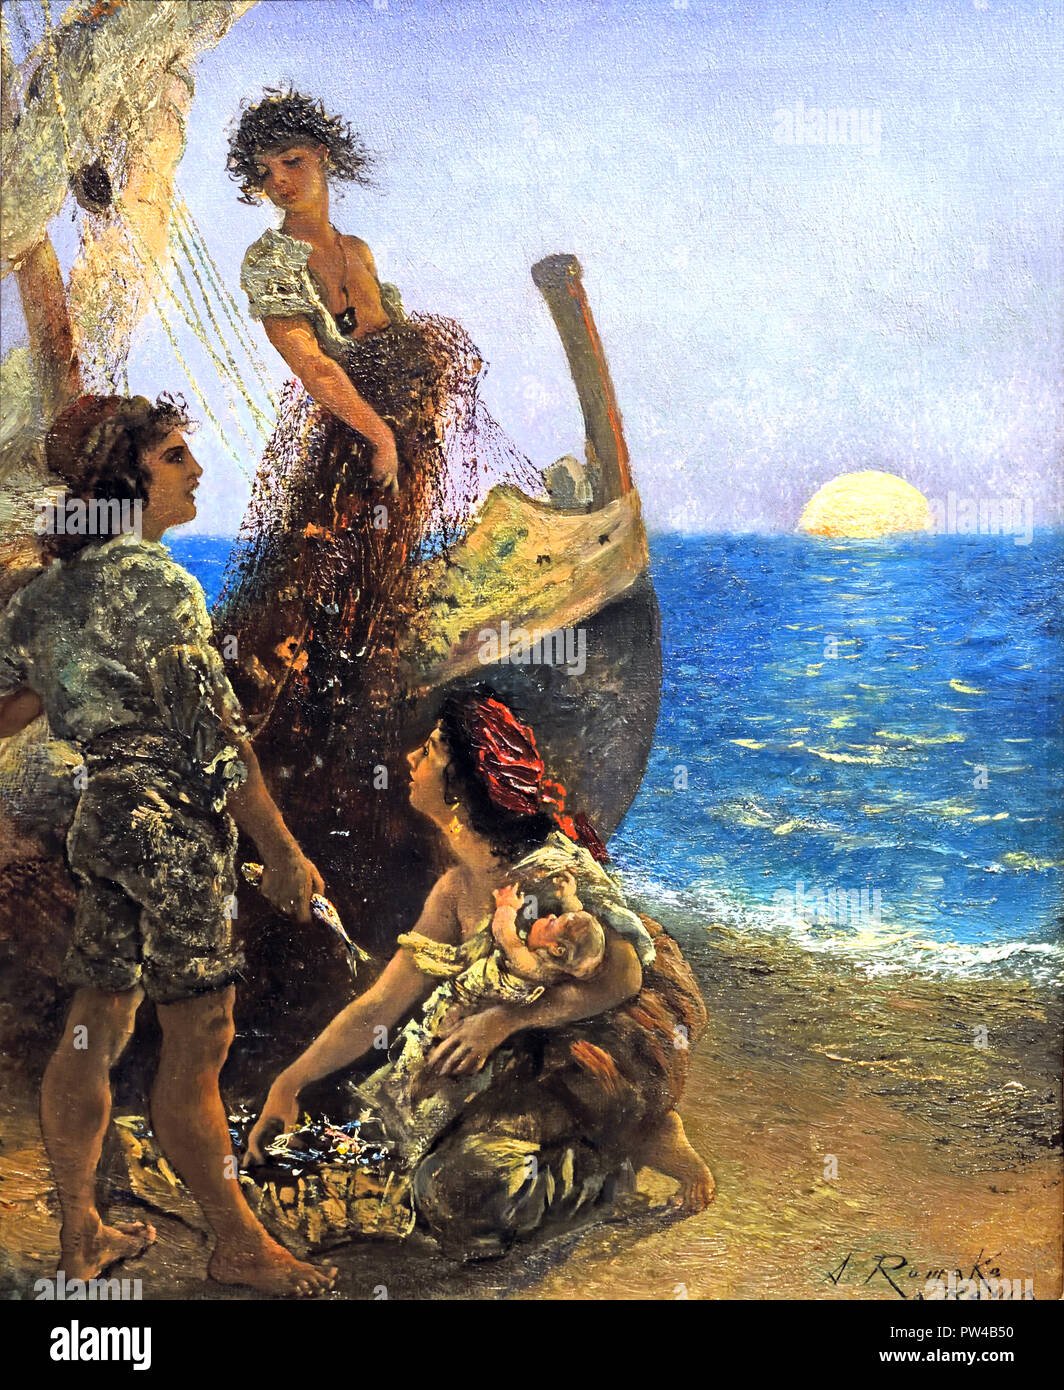 Pêcheur italien sur la plage 1873/1876 par Anton Romako 1832 - 1889 peintre autrichien. L'Autriche . ( Anton Romako a été l'un des grands pionniers du modernisme ) Banque D'Images